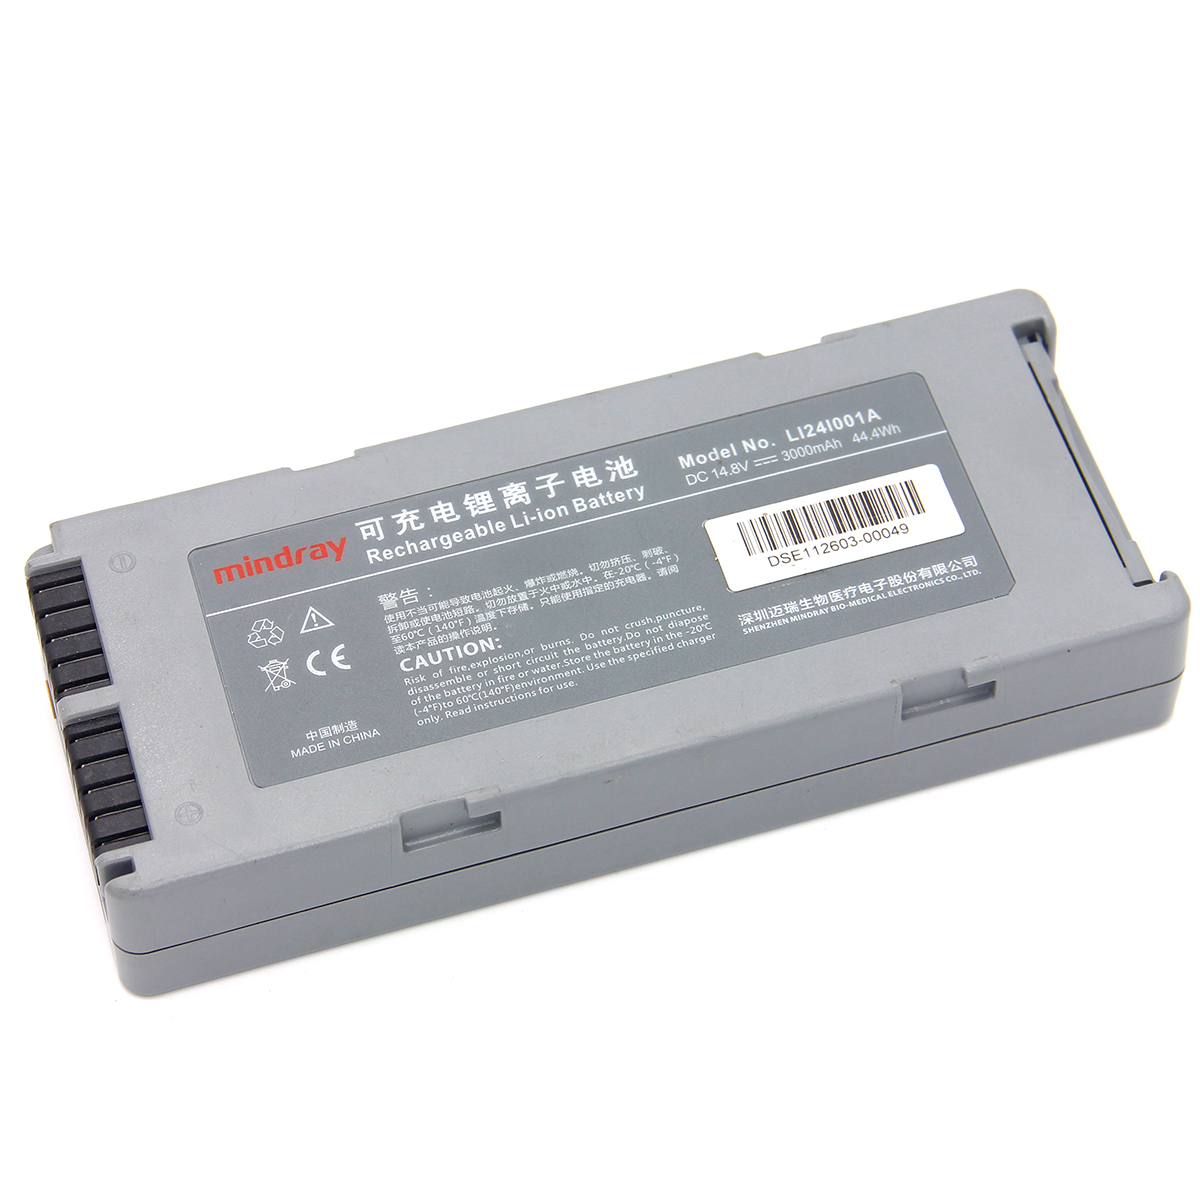 Original Mindray defibrillator D2 D3 D5 D6 LI24I001A LI24I005A battery [Battery model] LI24I001A LI24I005A [Product